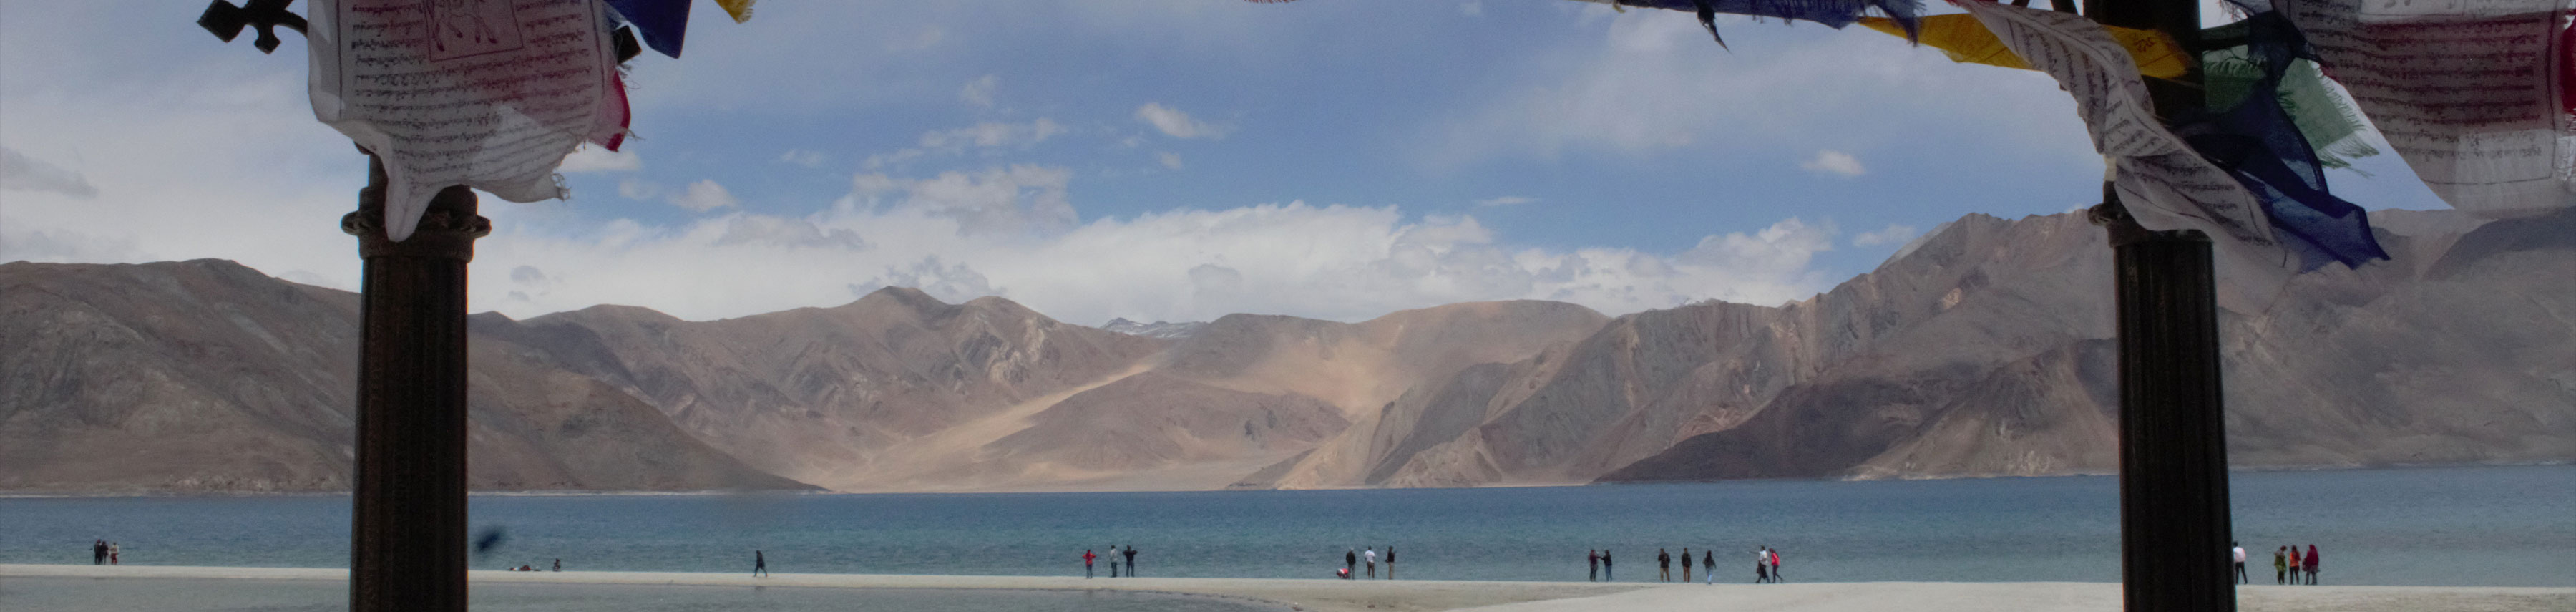 Essential Ladakh